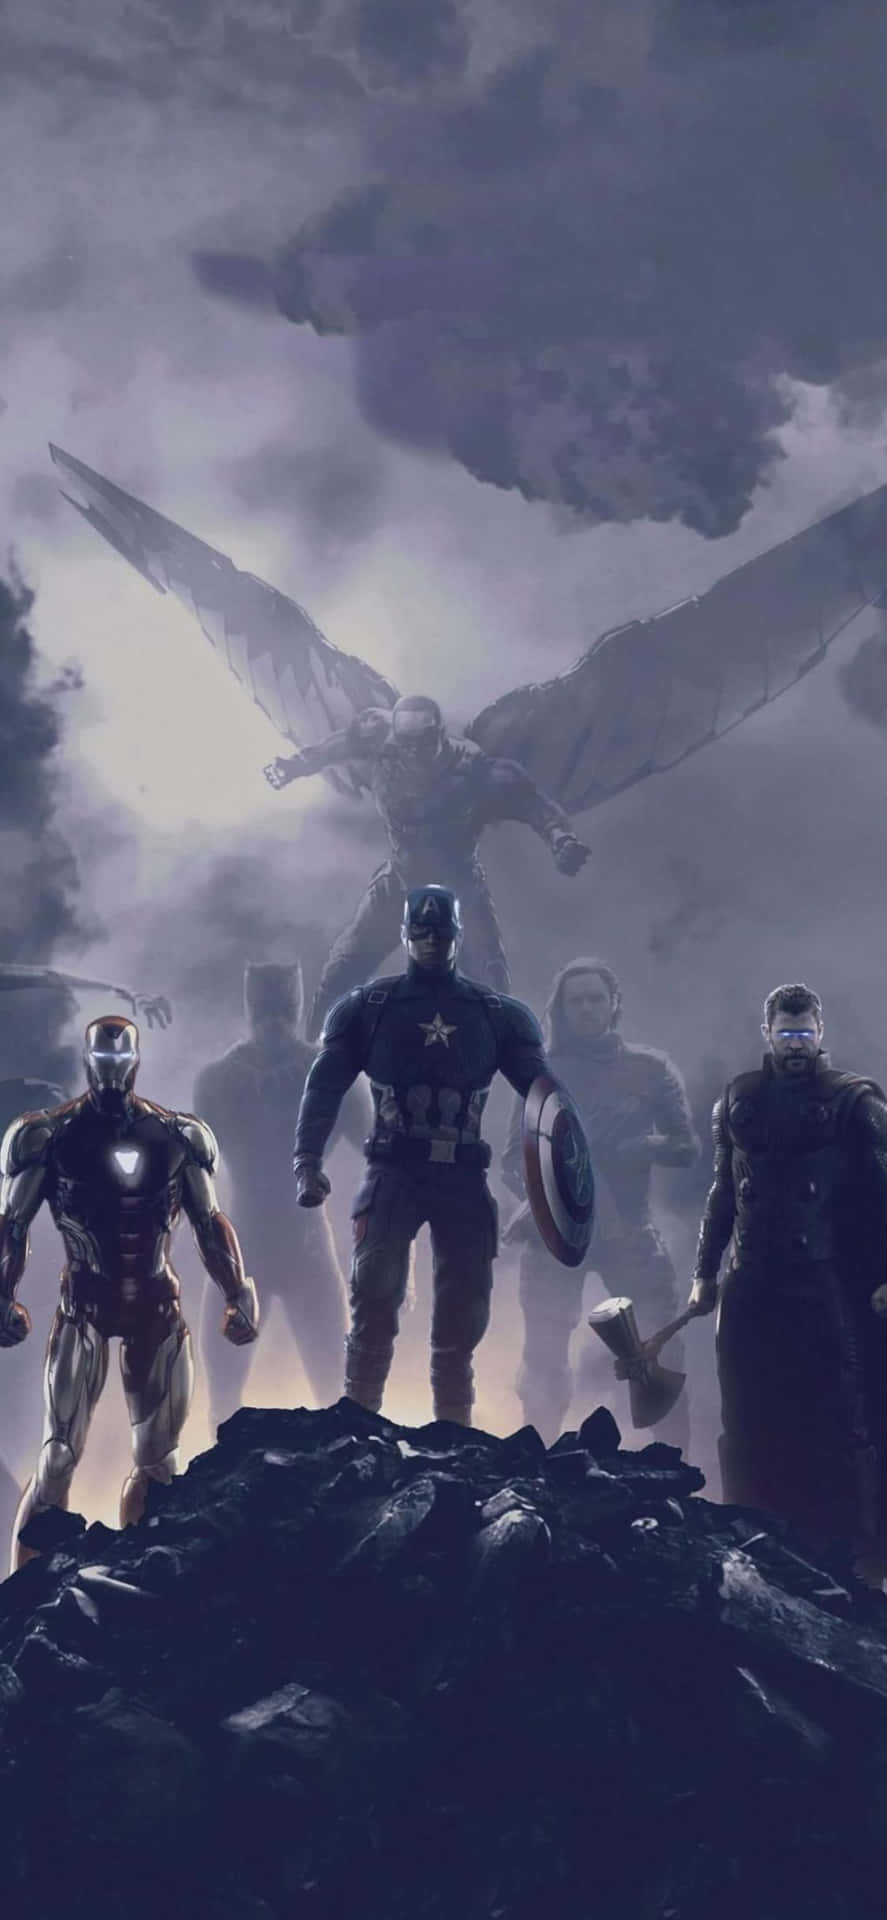 Iphonexs Avengers Endgame Bakgrundsbild Filmscen.